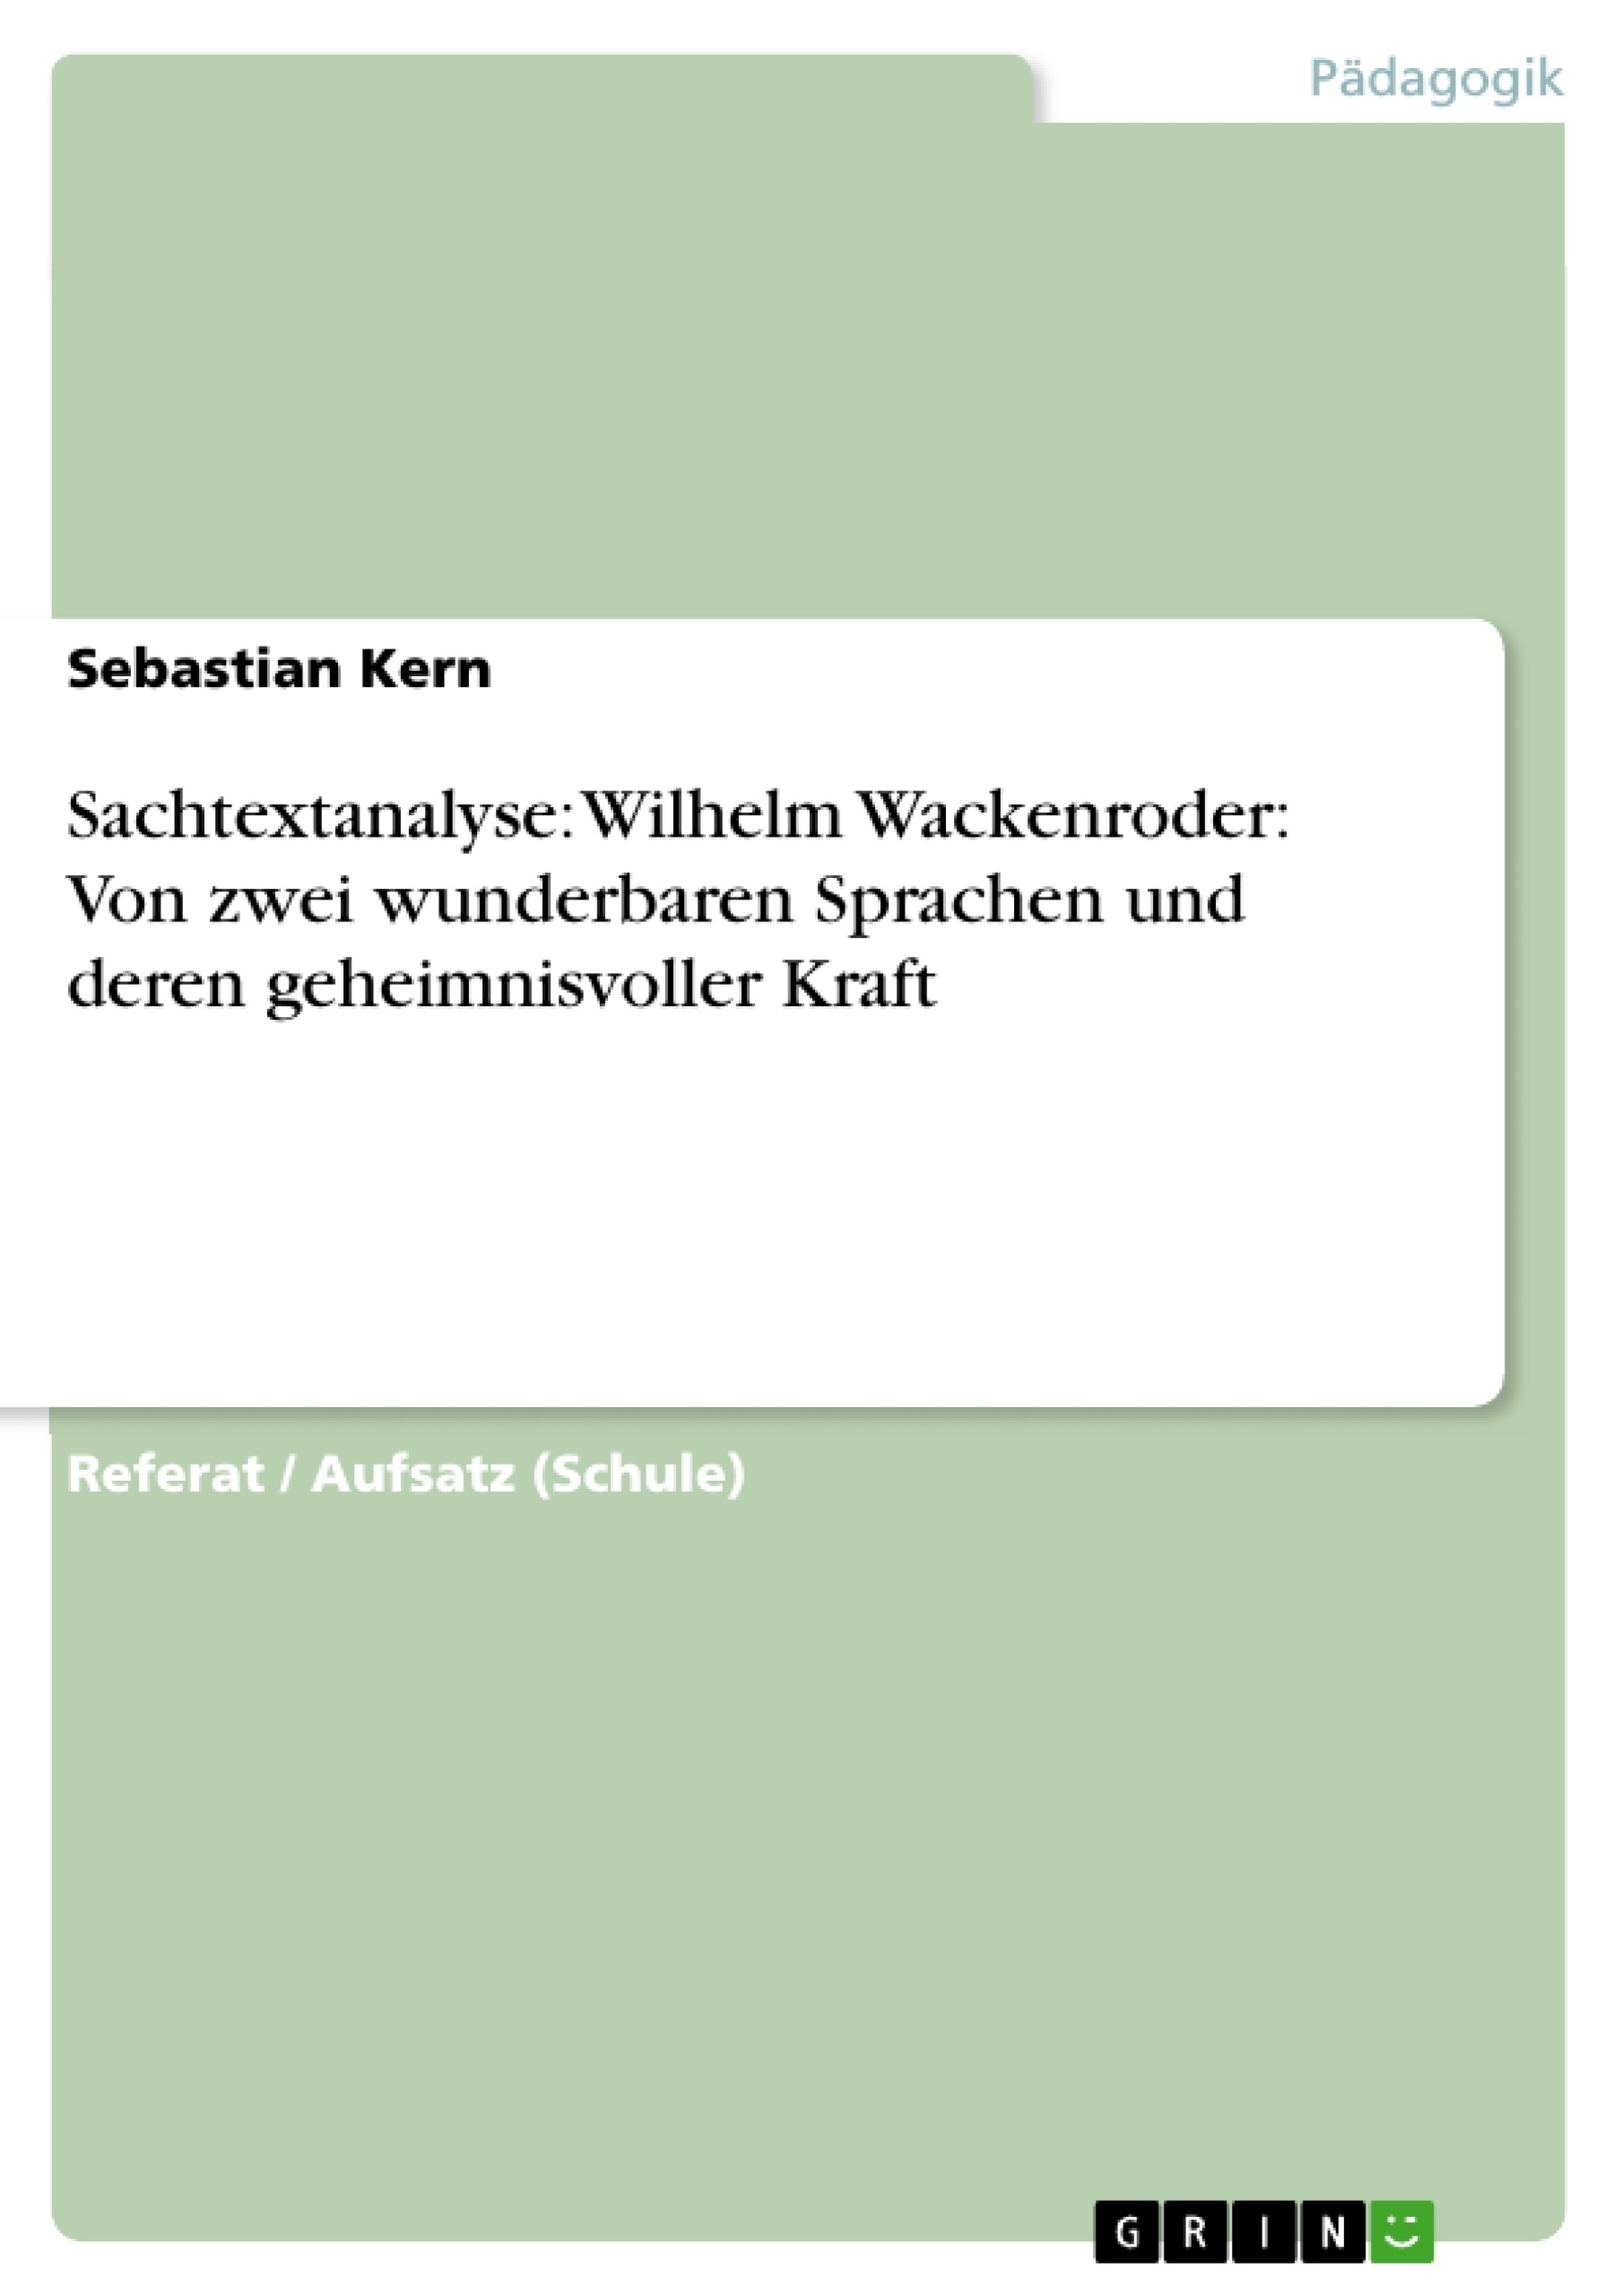 Titel: Sachtextanalyse: Wilhelm Wackenroder: Von zwei wunderbaren Sprachen und deren geheimnisvoller Kraft